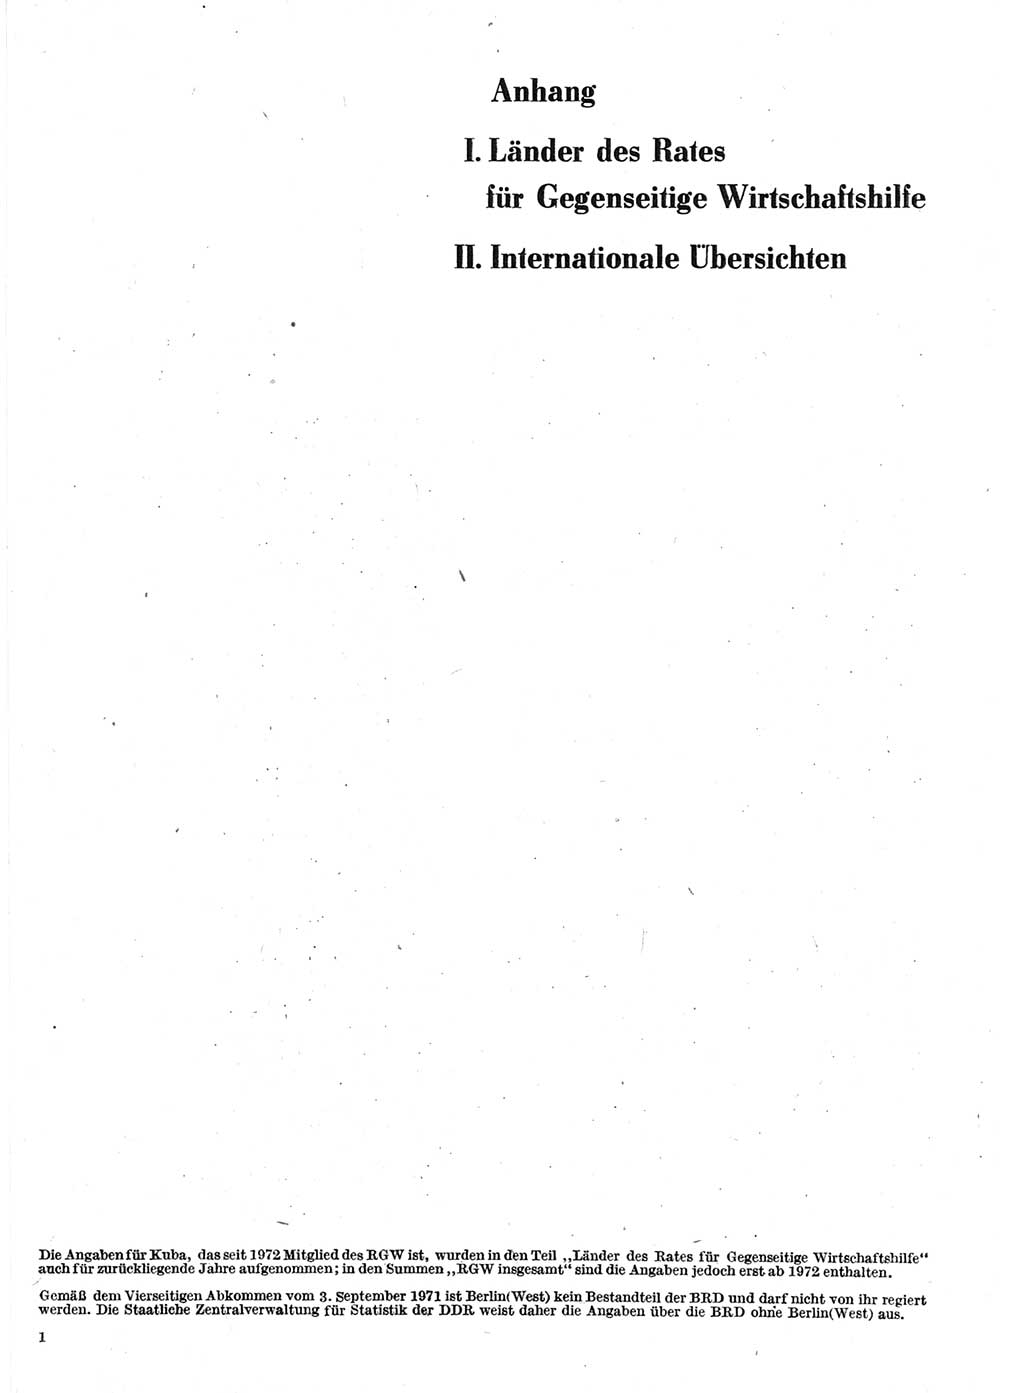 Statistisches Jahrbuch der Deutschen Demokratischen Republik (DDR) 1978, Seite 1 (Stat. Jb. DDR 1978, S. 1)